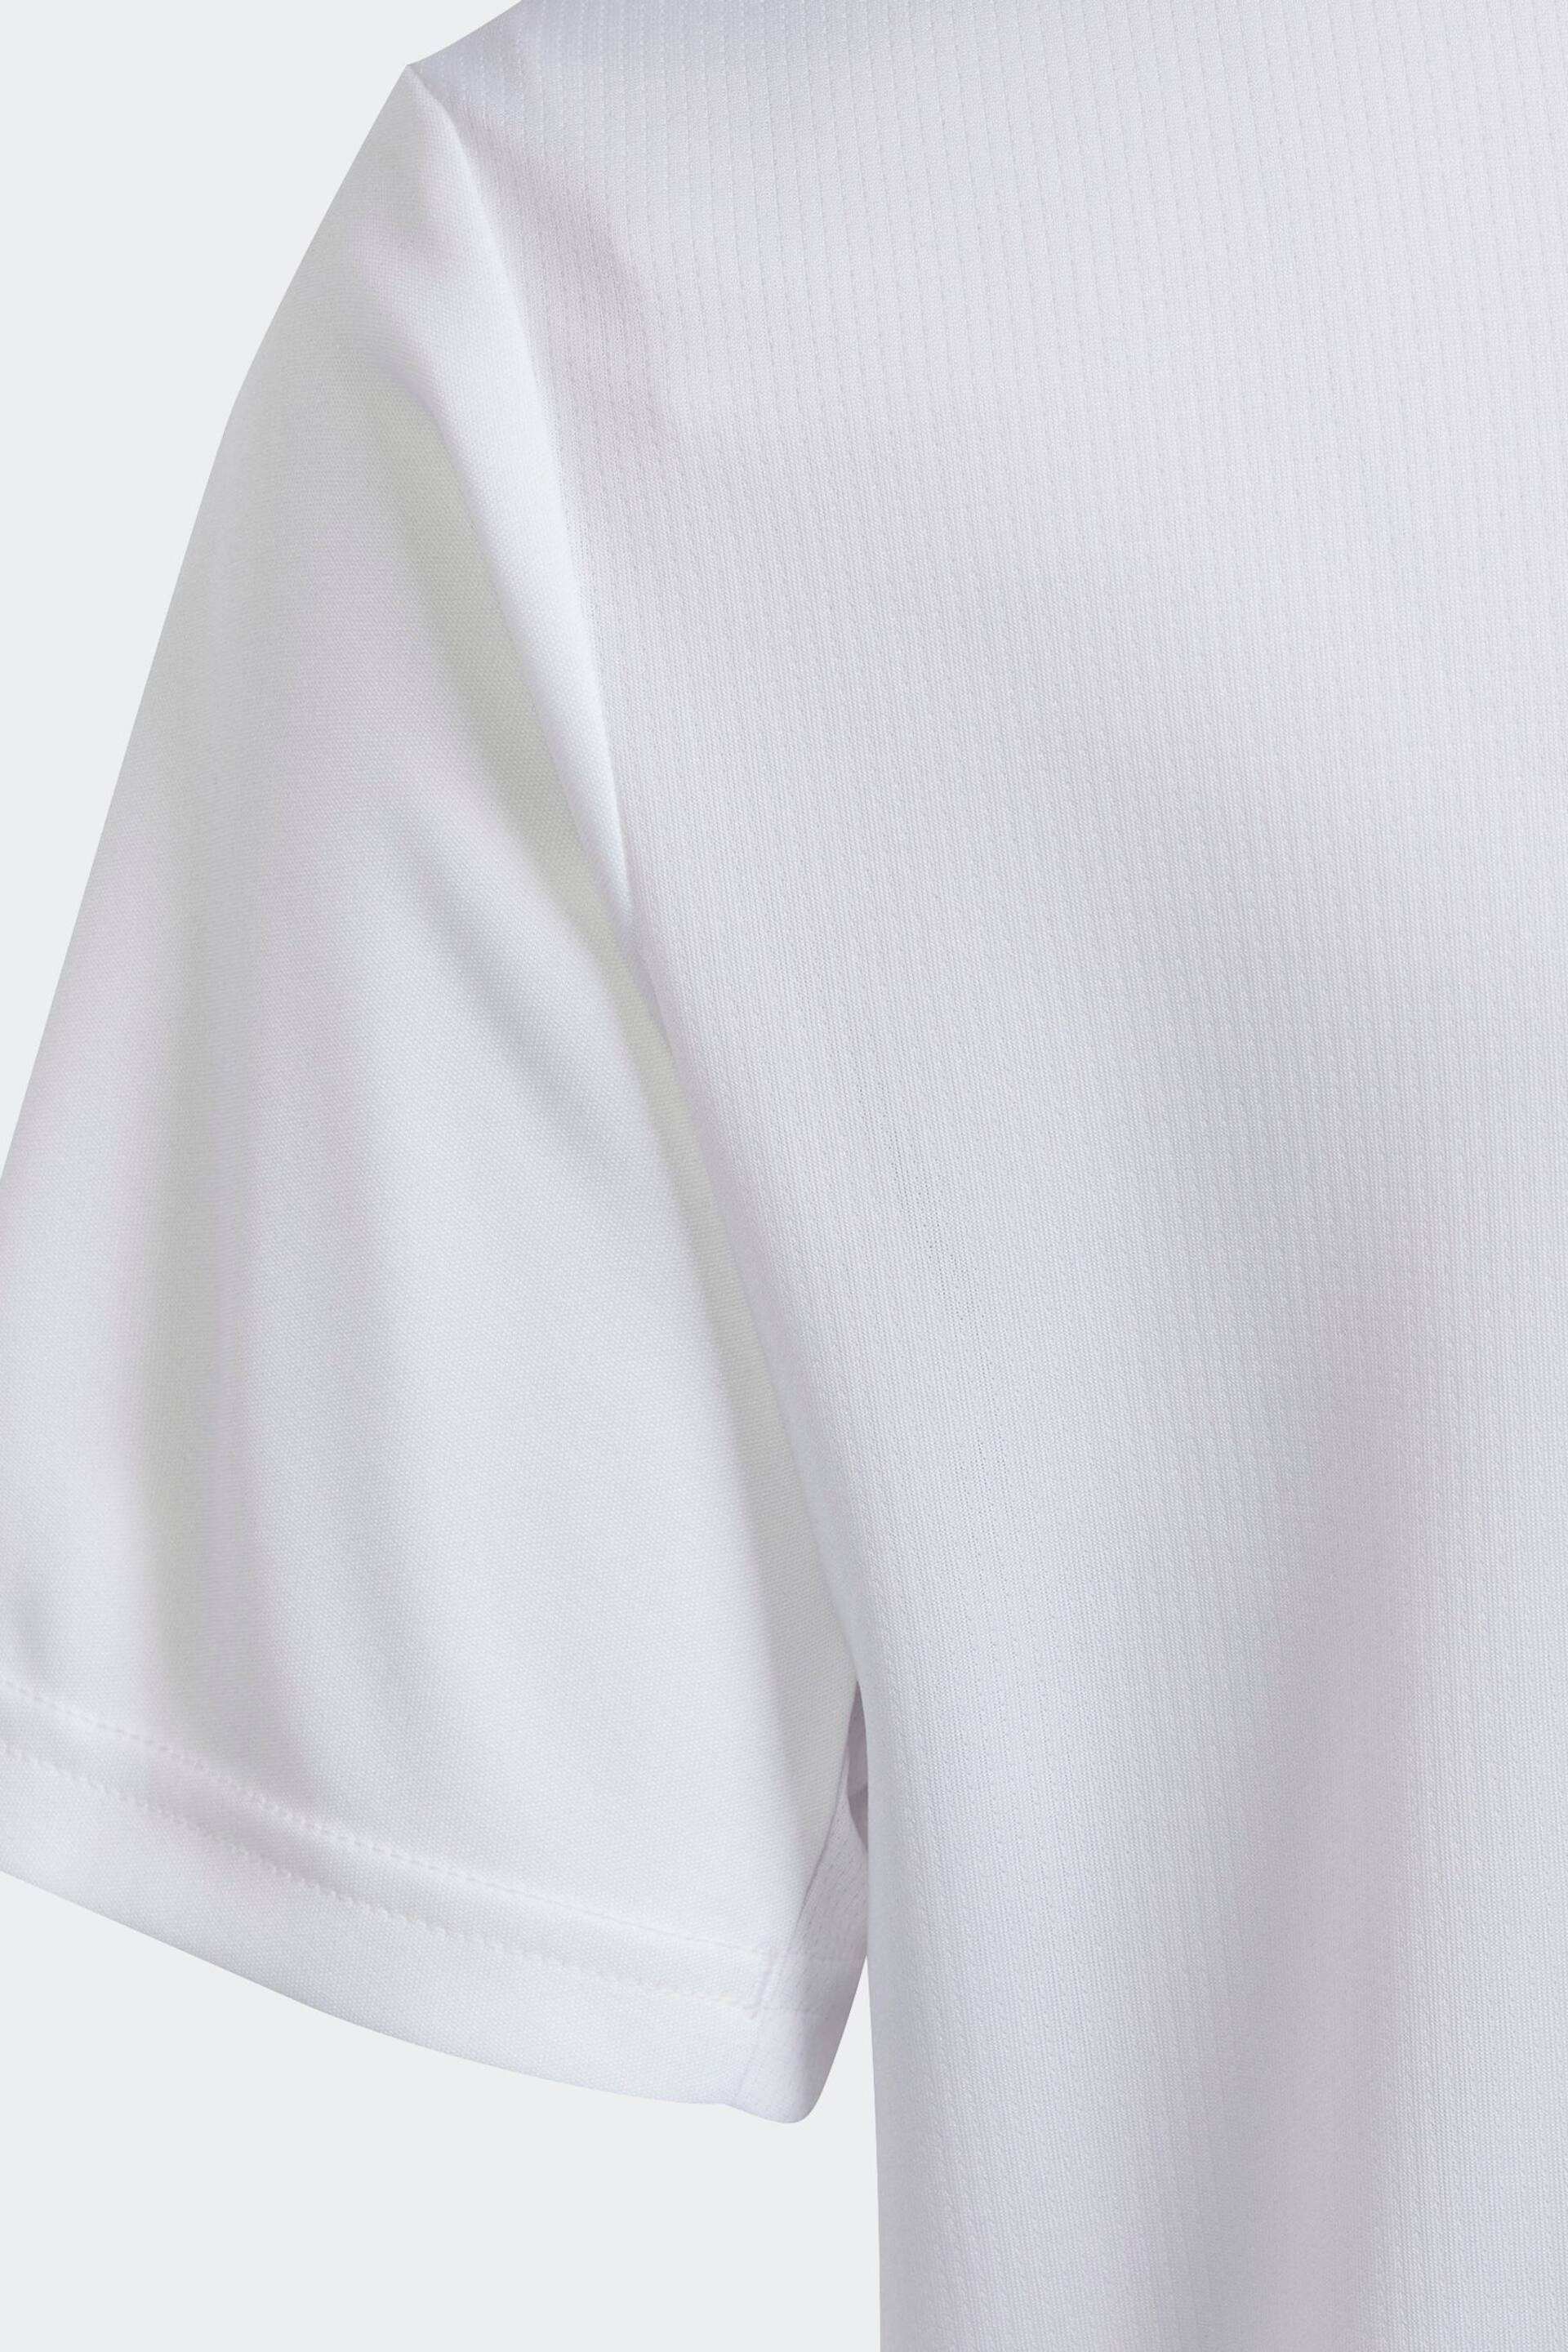 adidas White T-Shirt - Image 4 of 5